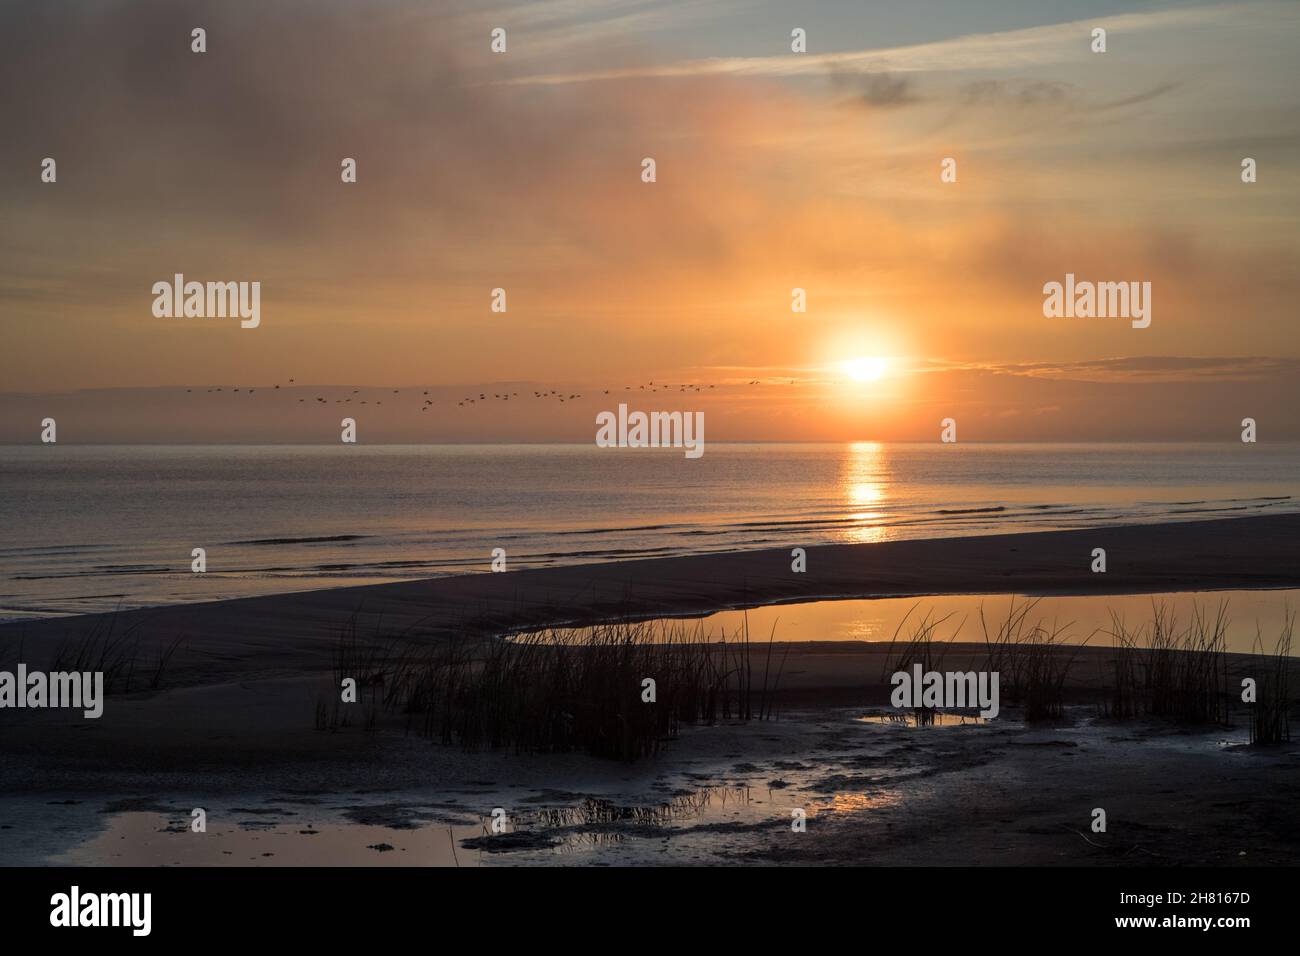 Eine Sonnenaufgangsszene am Ostseestrand mit aufgehender Sonne und einem Vogelschwarm, der in der Ferne vorbeifliegt Stockfoto